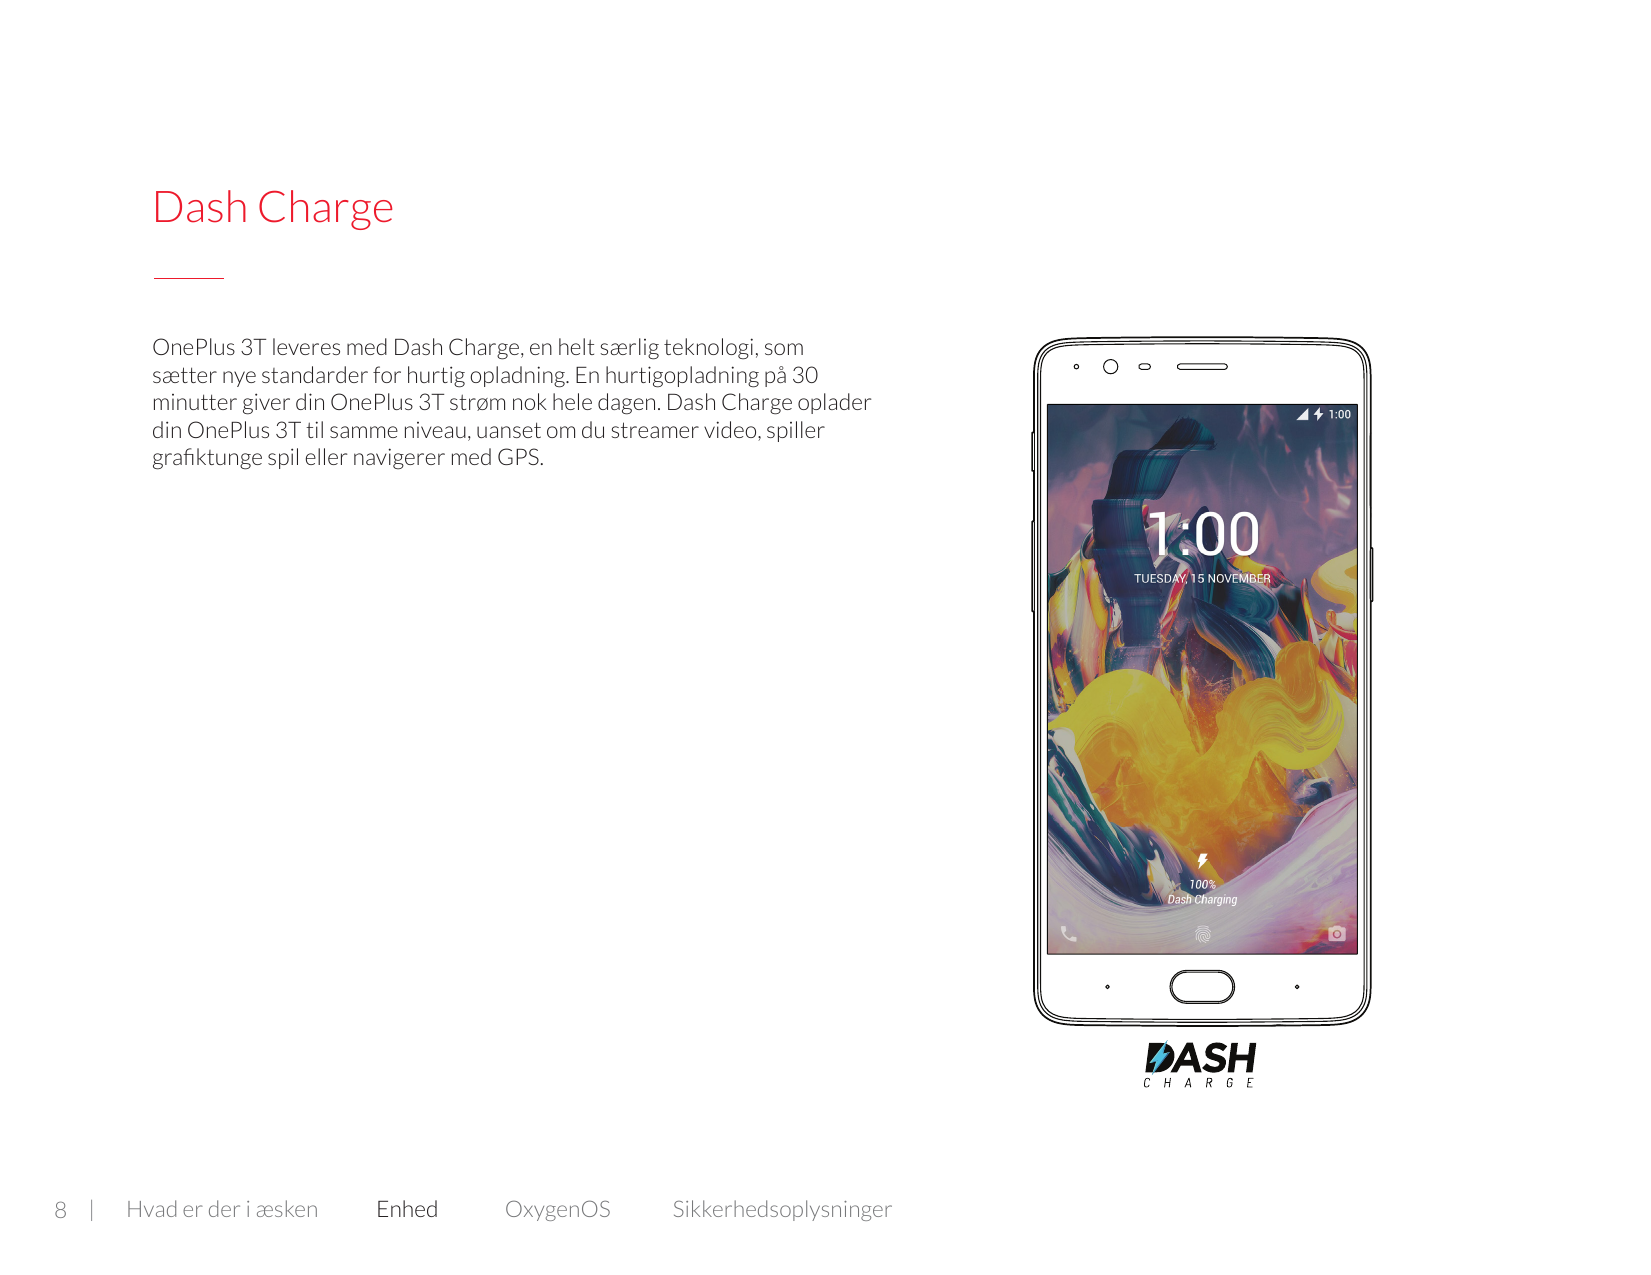 Dash ChargeOnePlus 3T leveres med Dash Charge, en helt særlig teknologi, somsætter nye standarder for hurtig opladning. En hurti